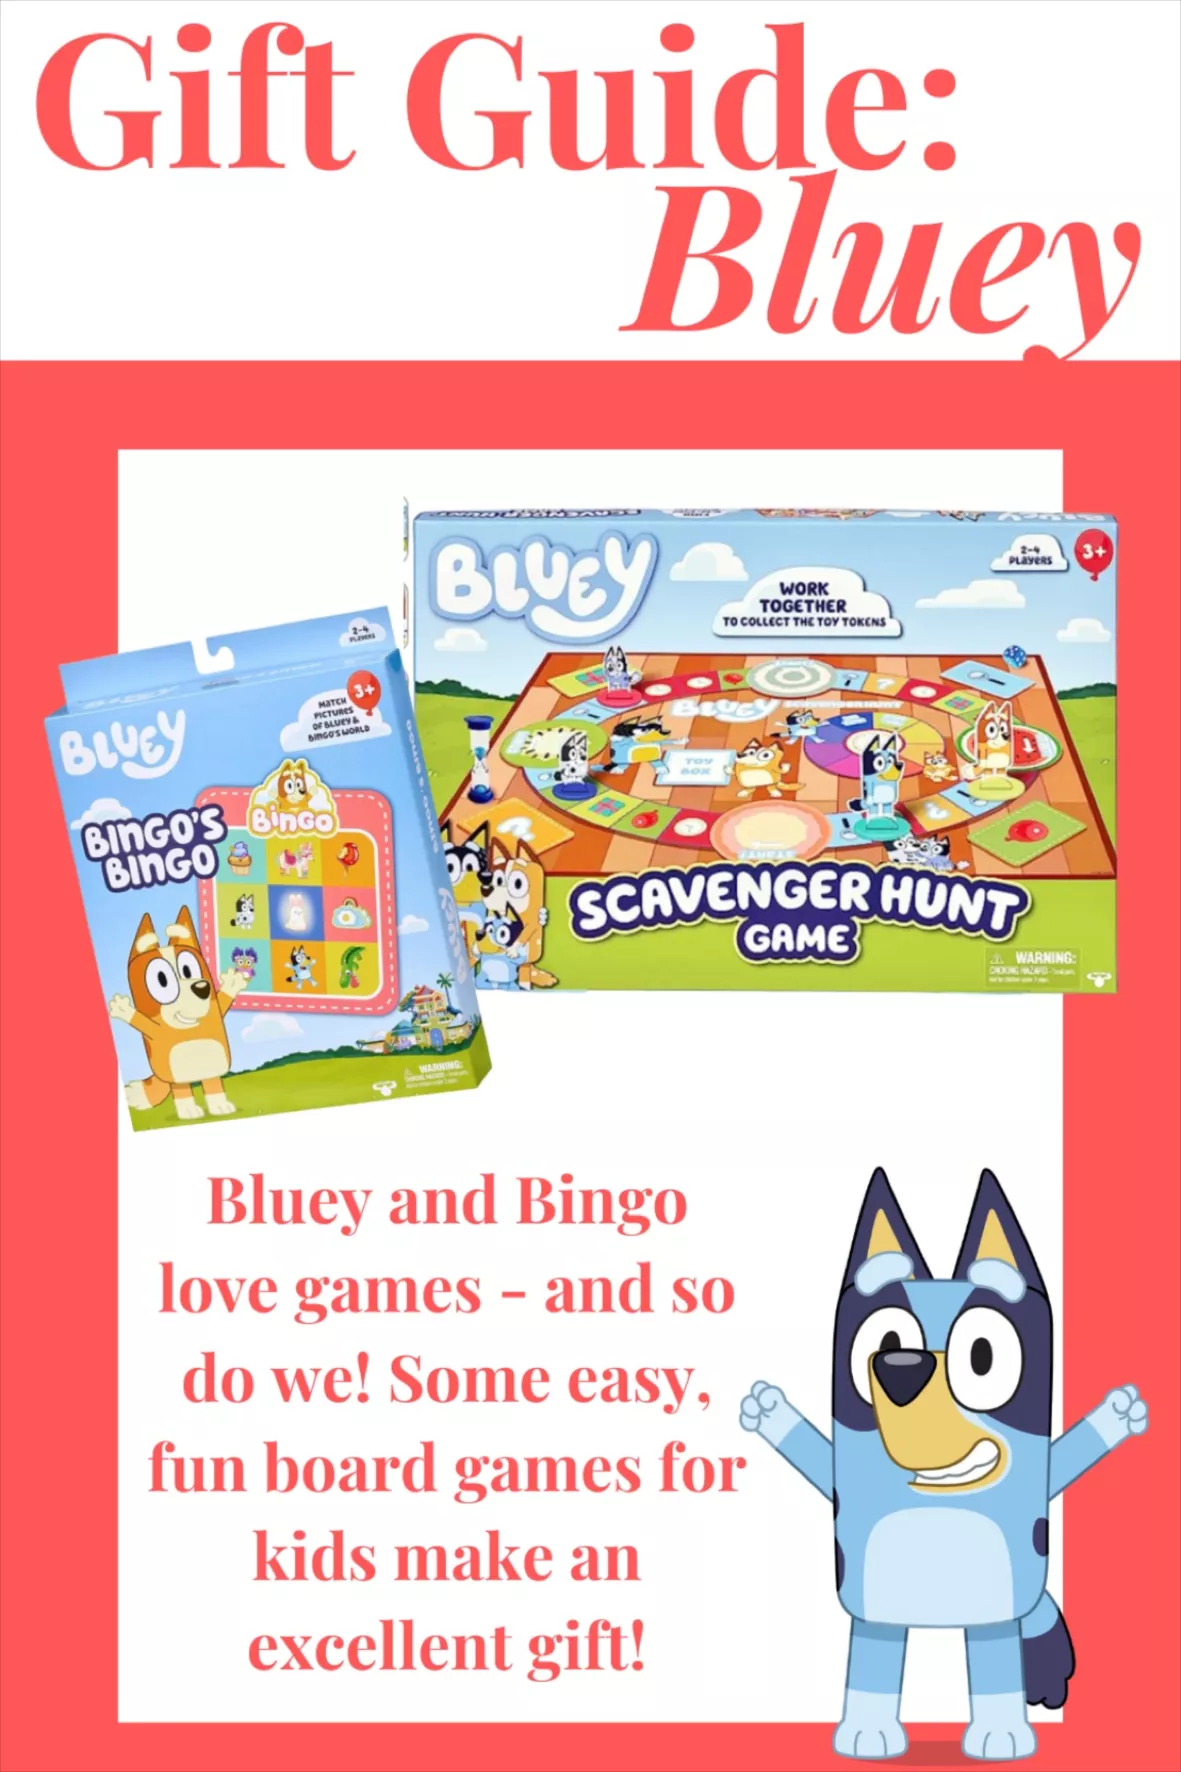 Bingo's Bingo - Bluey Official Website